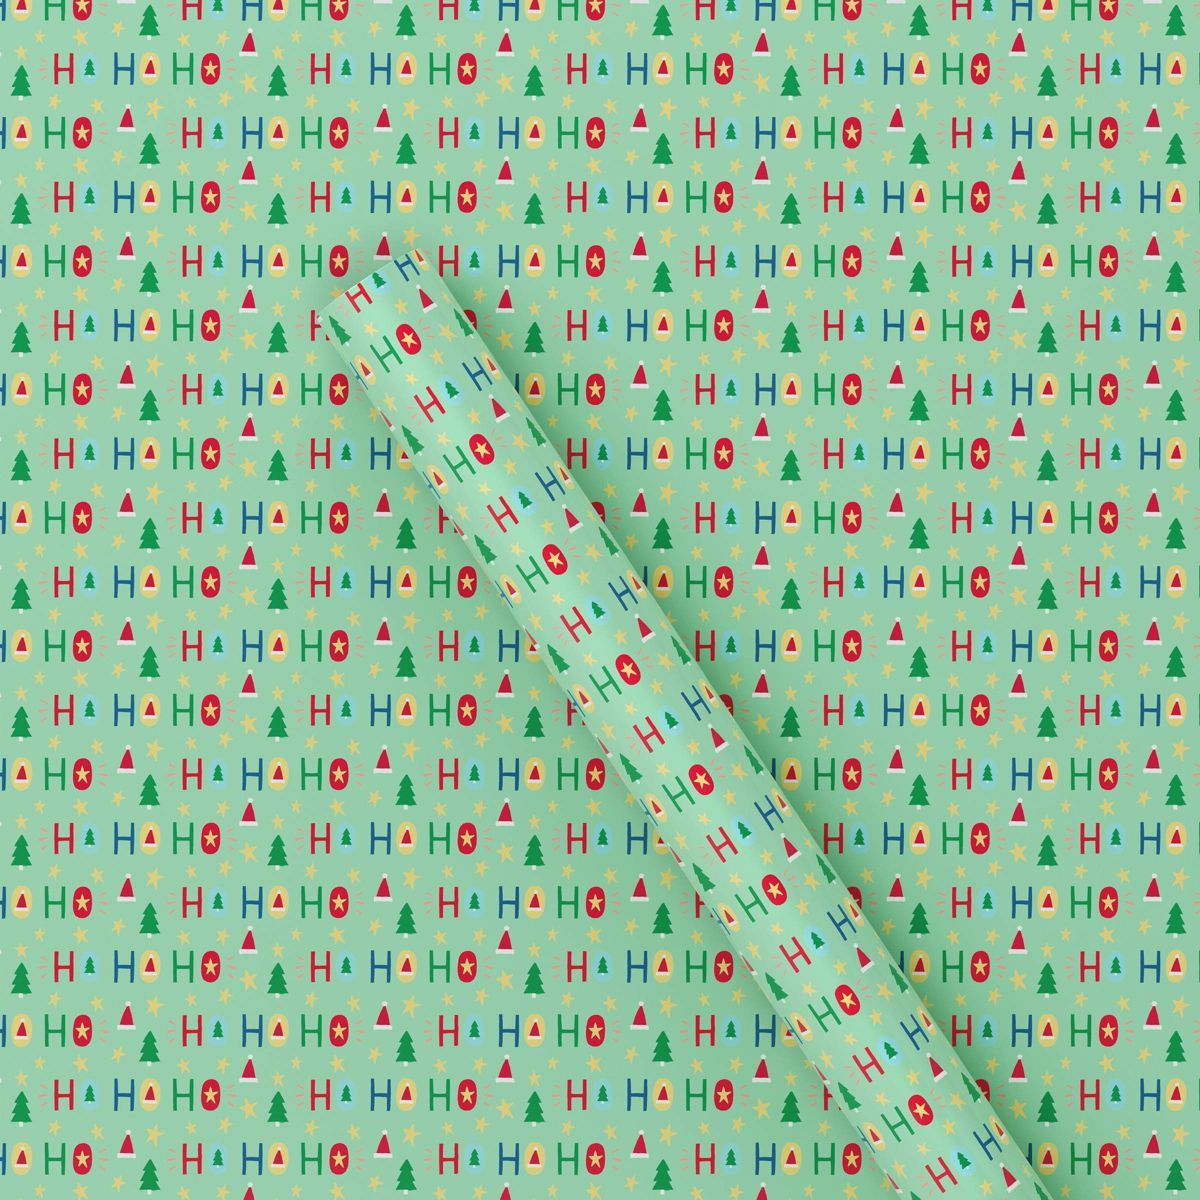 20 sq ft 'Ho Ho Ho' Christmas Gift Wrap Light Green - Wondershop™ | Target